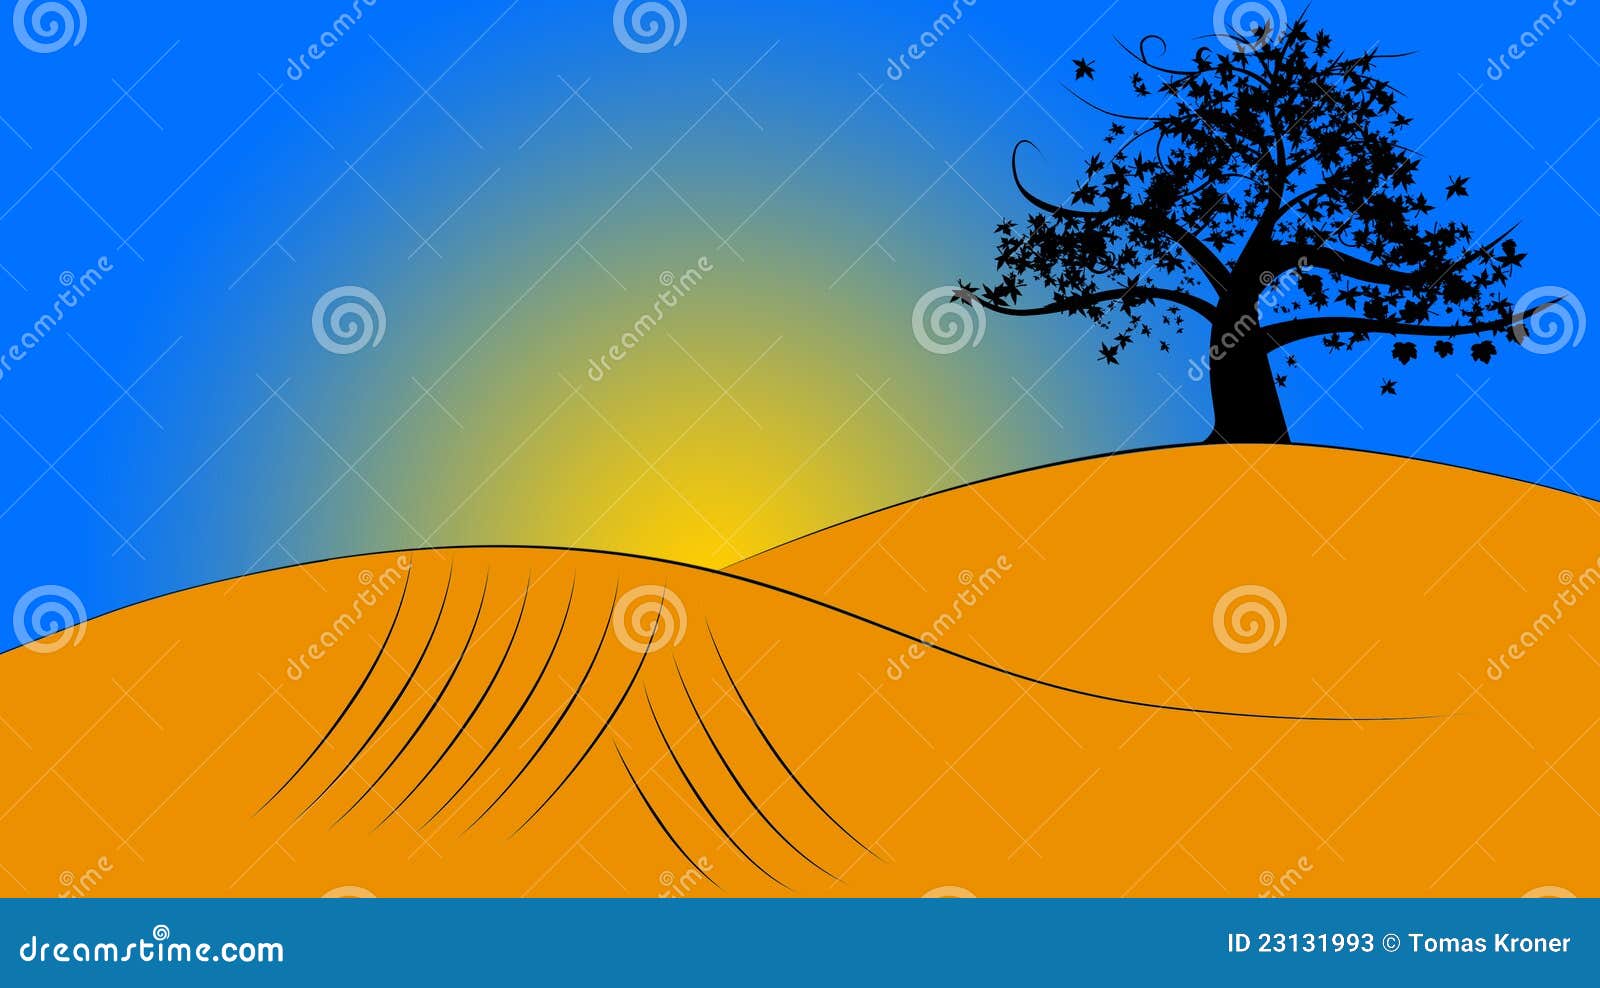 Illustrazione di paesaggio. Illustrazione di tramonto con l'albero ed il terreno arabile. Ci è un posto per testo dalla parte di sinistra.